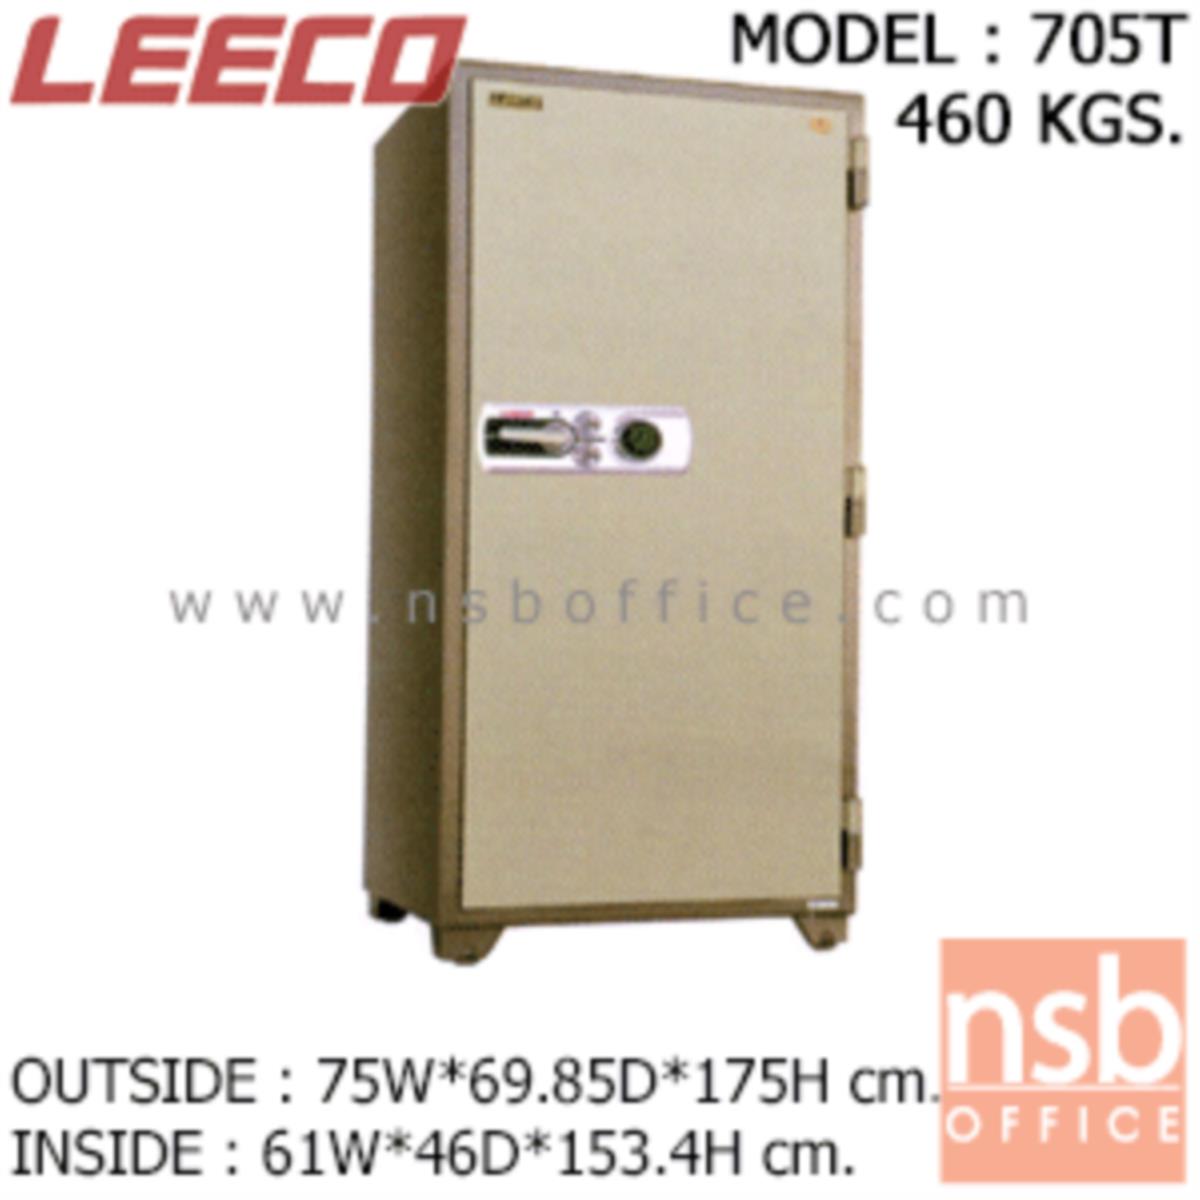 ตู้เซฟนิรภัย 460 กก. ลีโก้ รุ่น LEECO-705T มี 2 กุญแจ 1 รหัส (เปลี่ยนรหัสได้)   